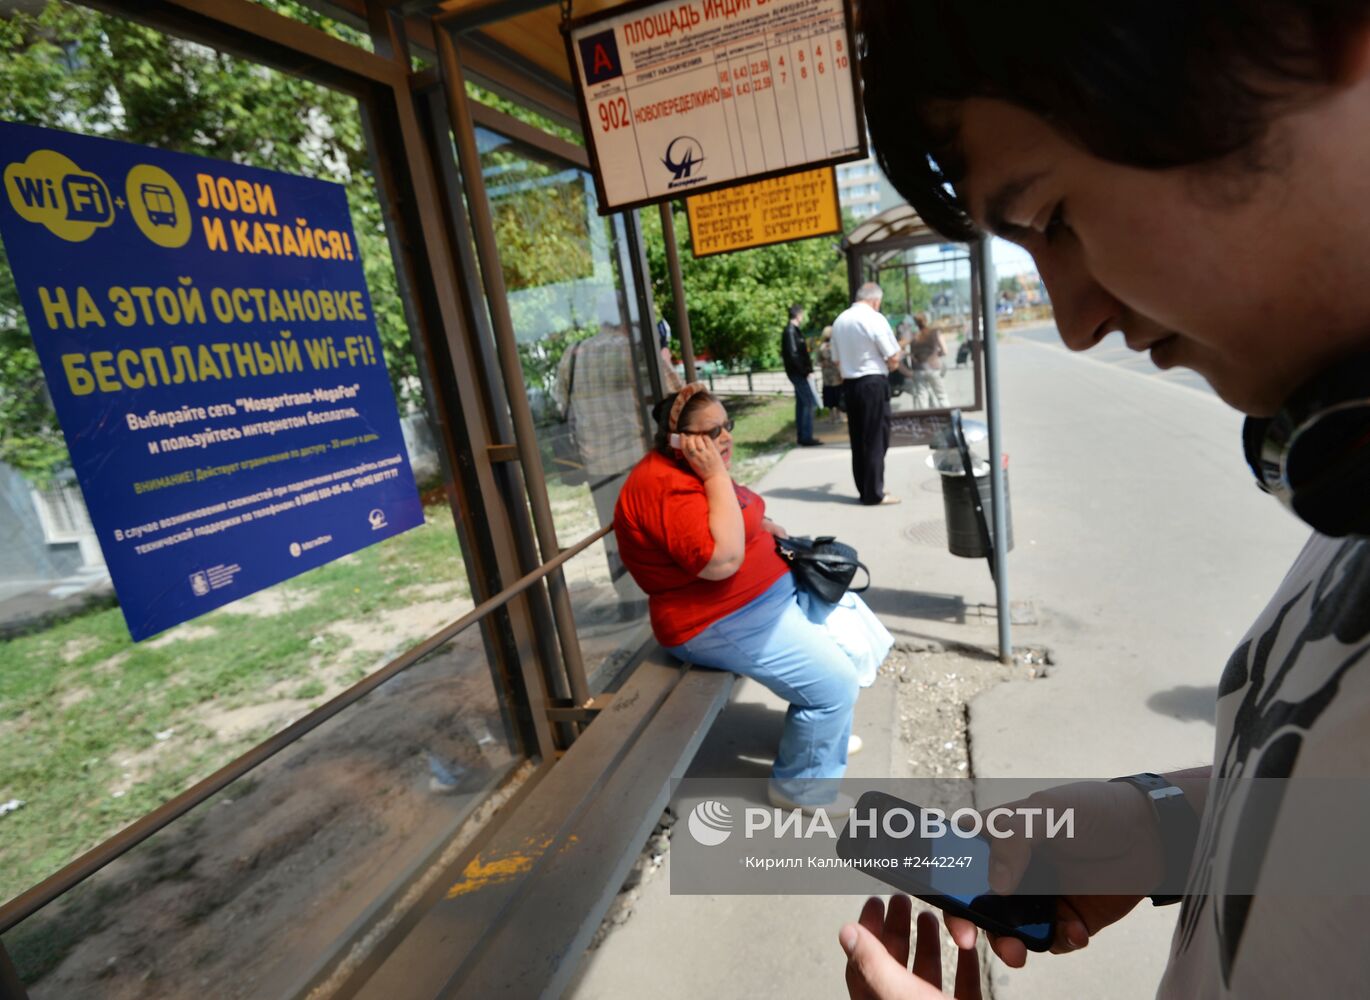 Остановки общественного транспорта с бесплатным Wi-Fi в Москве